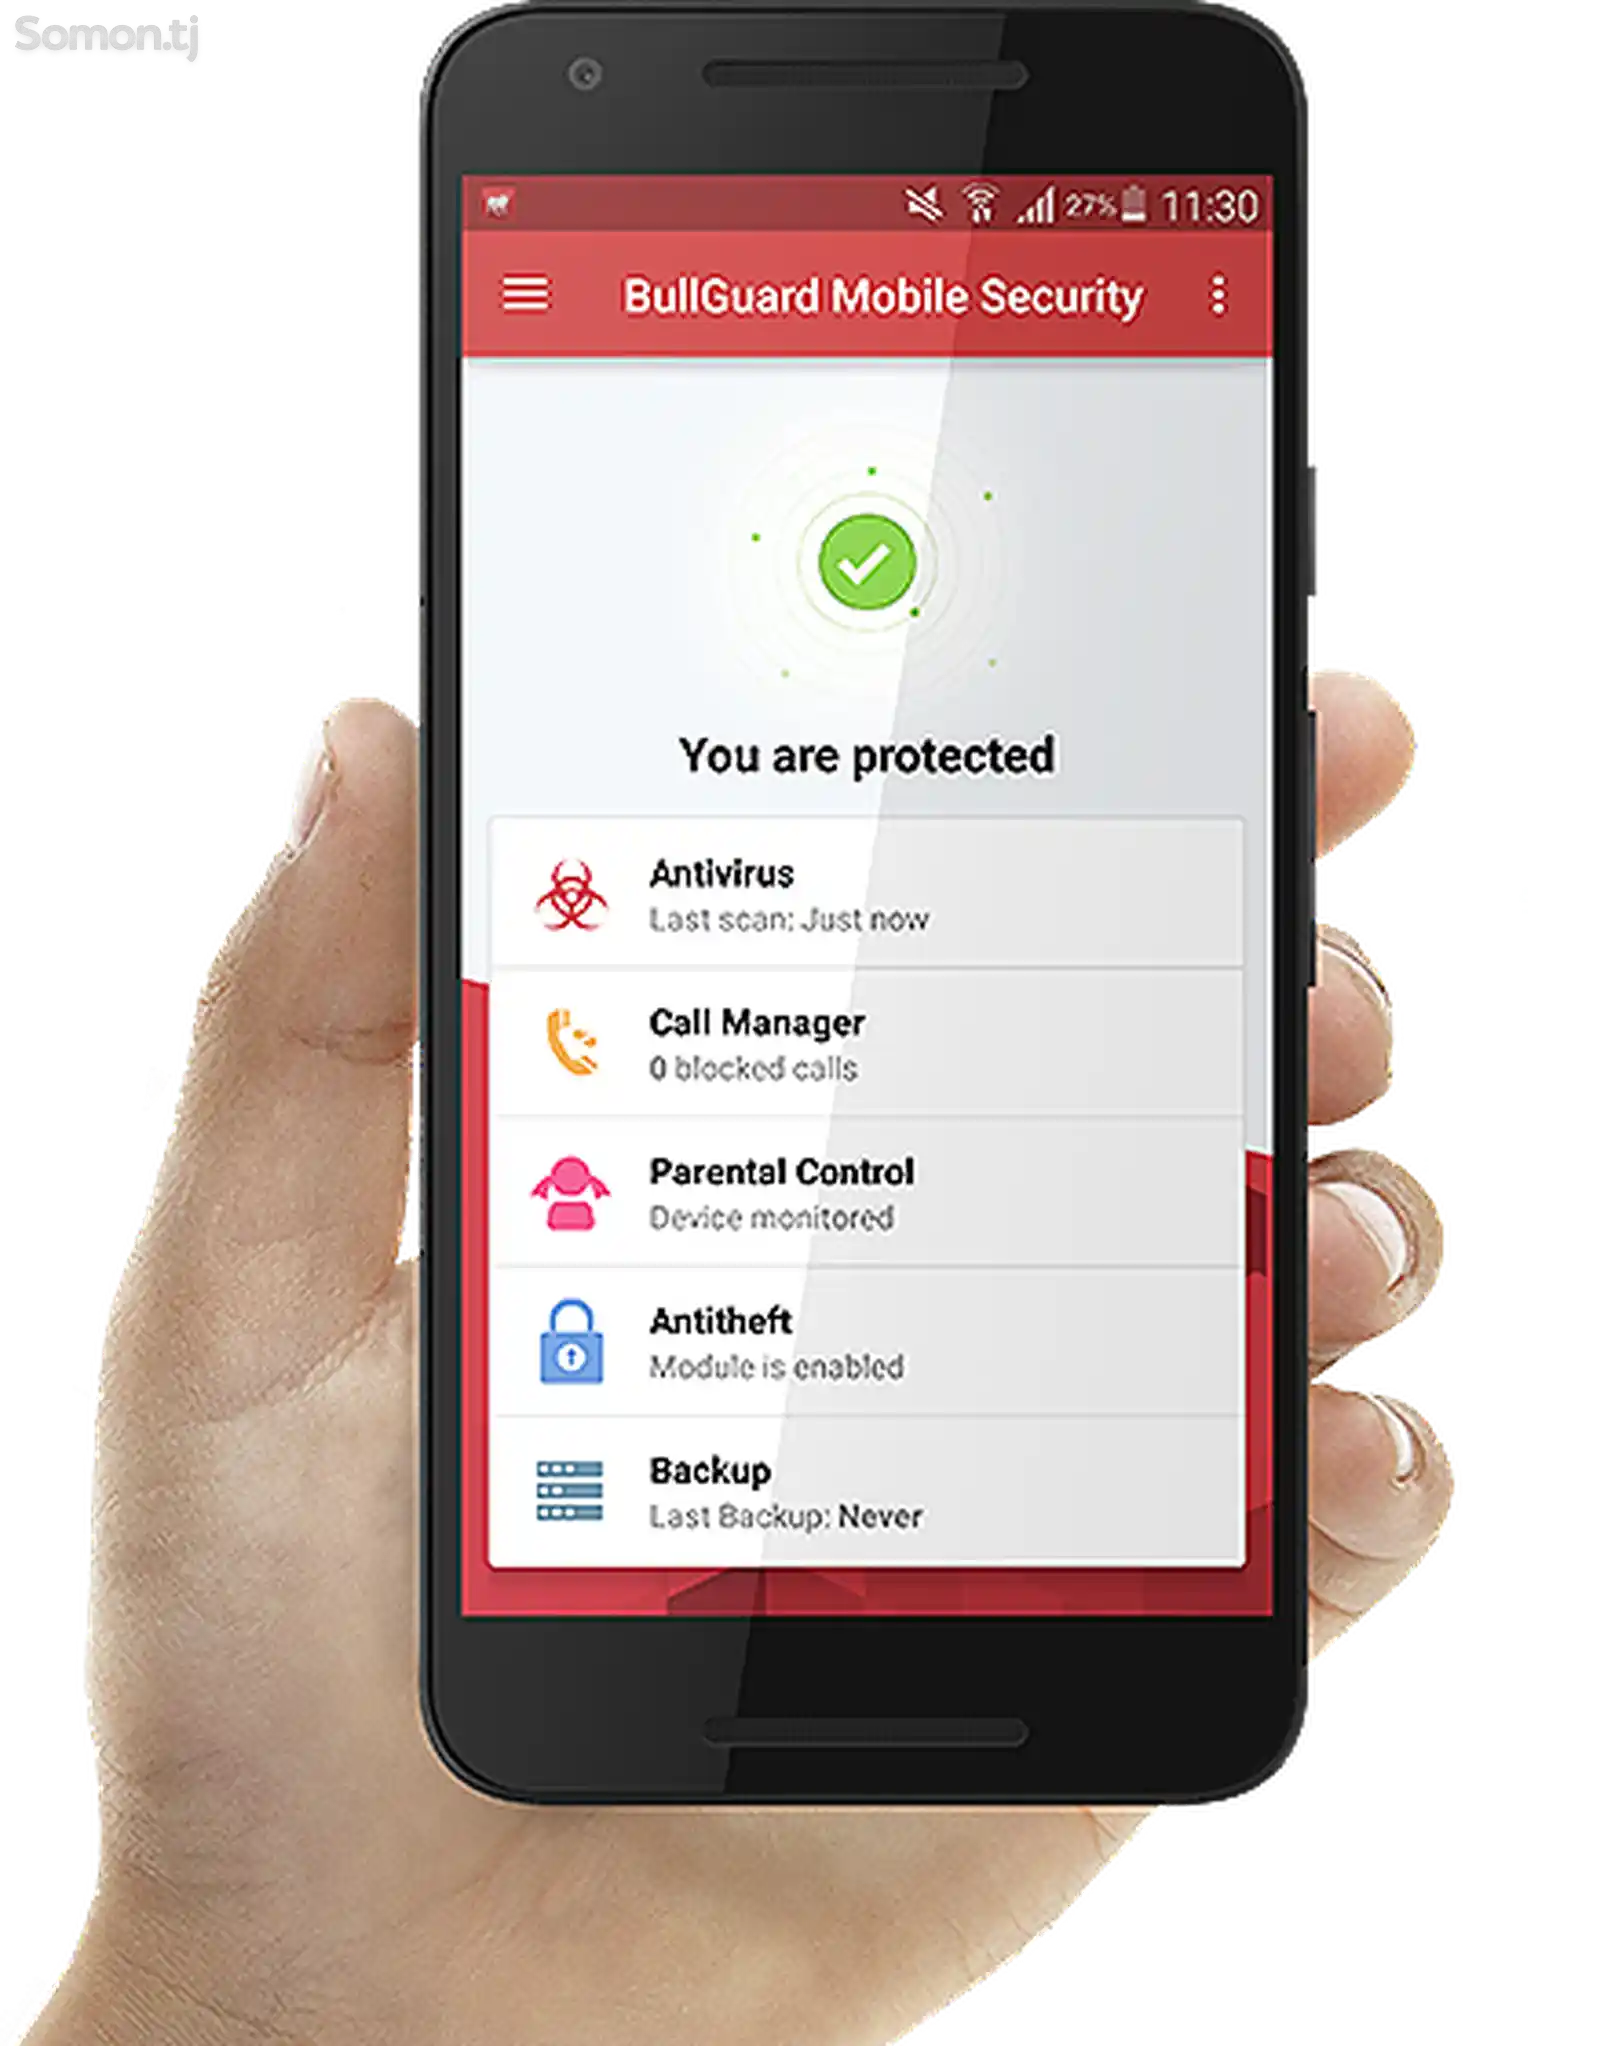 BullGuard Mobile Security 1 - иҷозатнома барои 1 мобайл, 1 сол-3